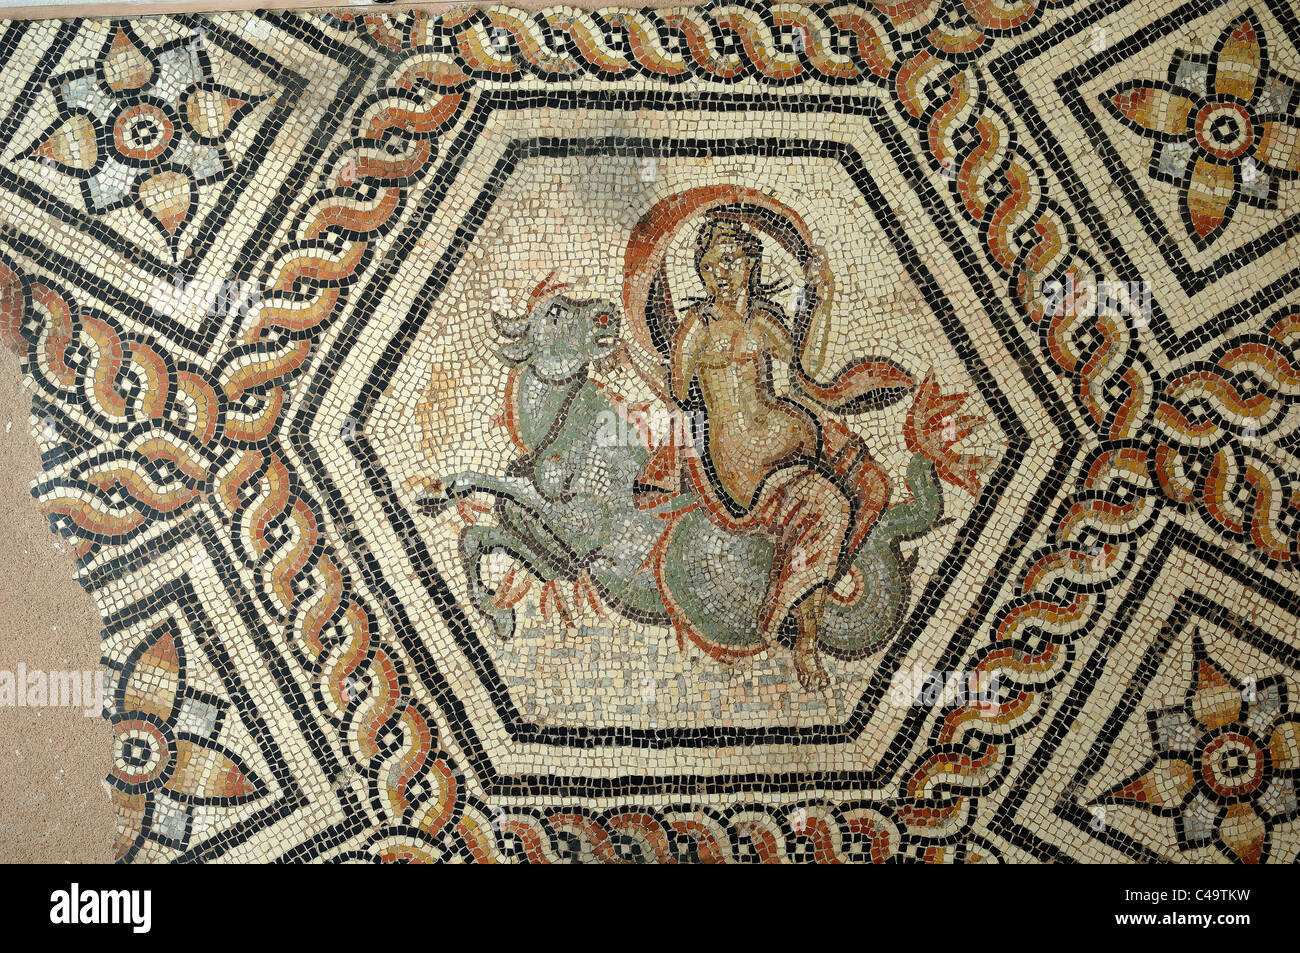 Plancher romain Mosaïque d'Europa Equitation d'un taureau sacré c2nd AD, dans un modèle hexagonal, d'une villa romaine près de Nîmes France Banque D'Images